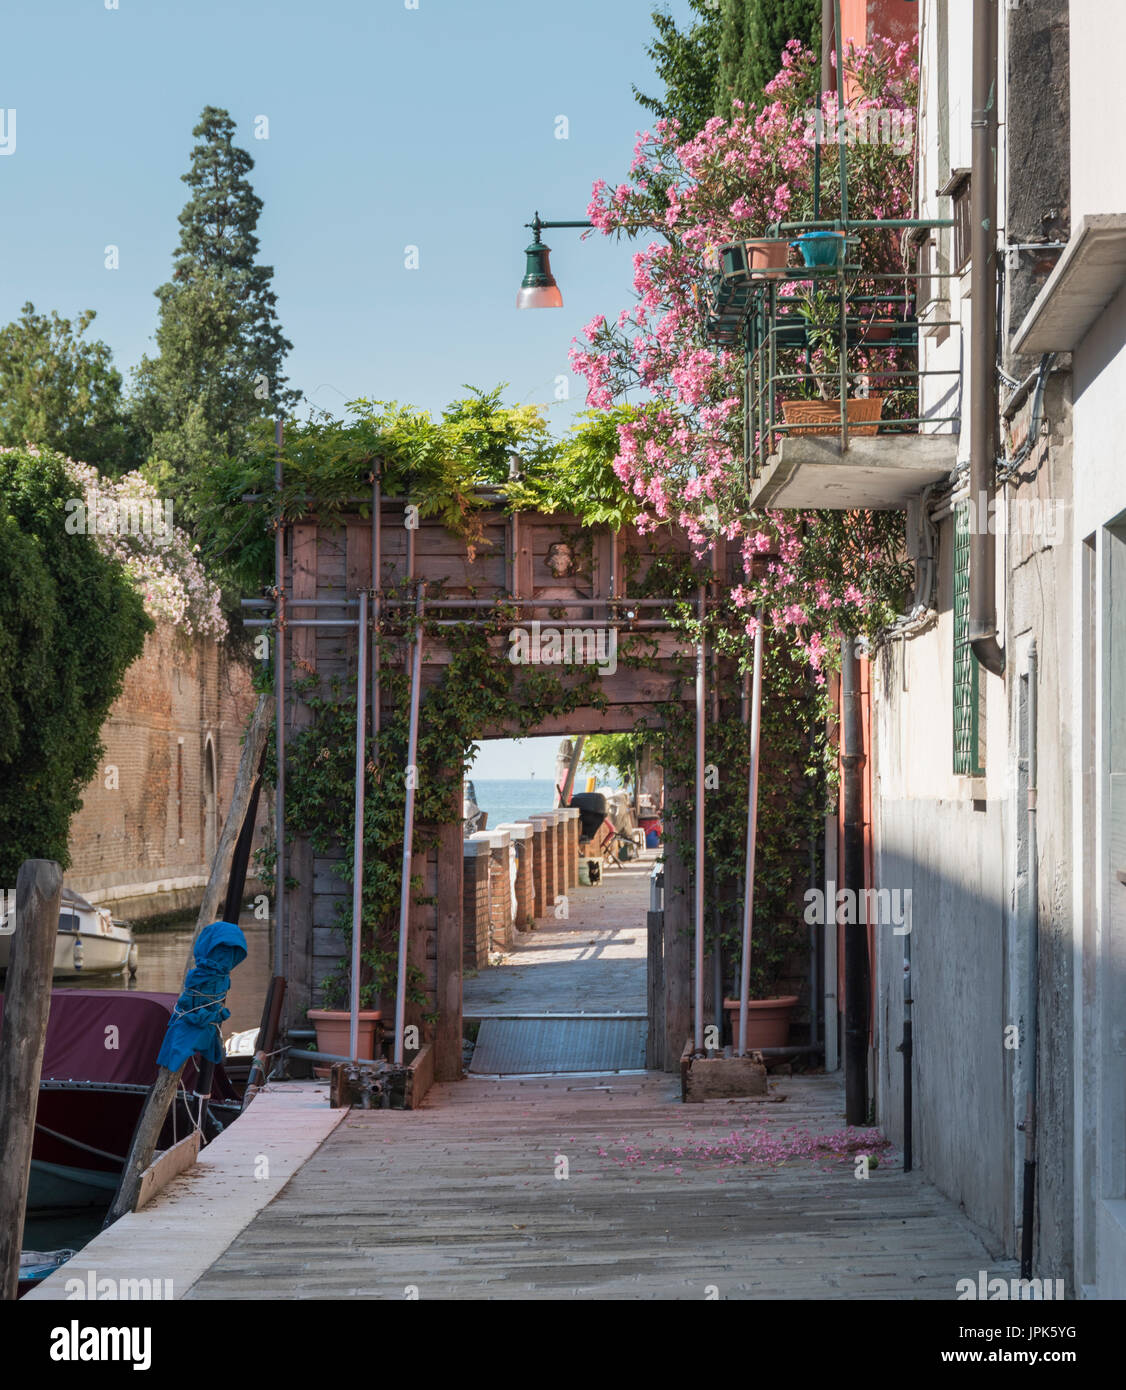 Una tranquilla scena di fiori la fuoriuscita di una scatola di vetro dal meno affollata, sobborghi periferici di Venezia sull'Isola della Giudecca. Foto Stock